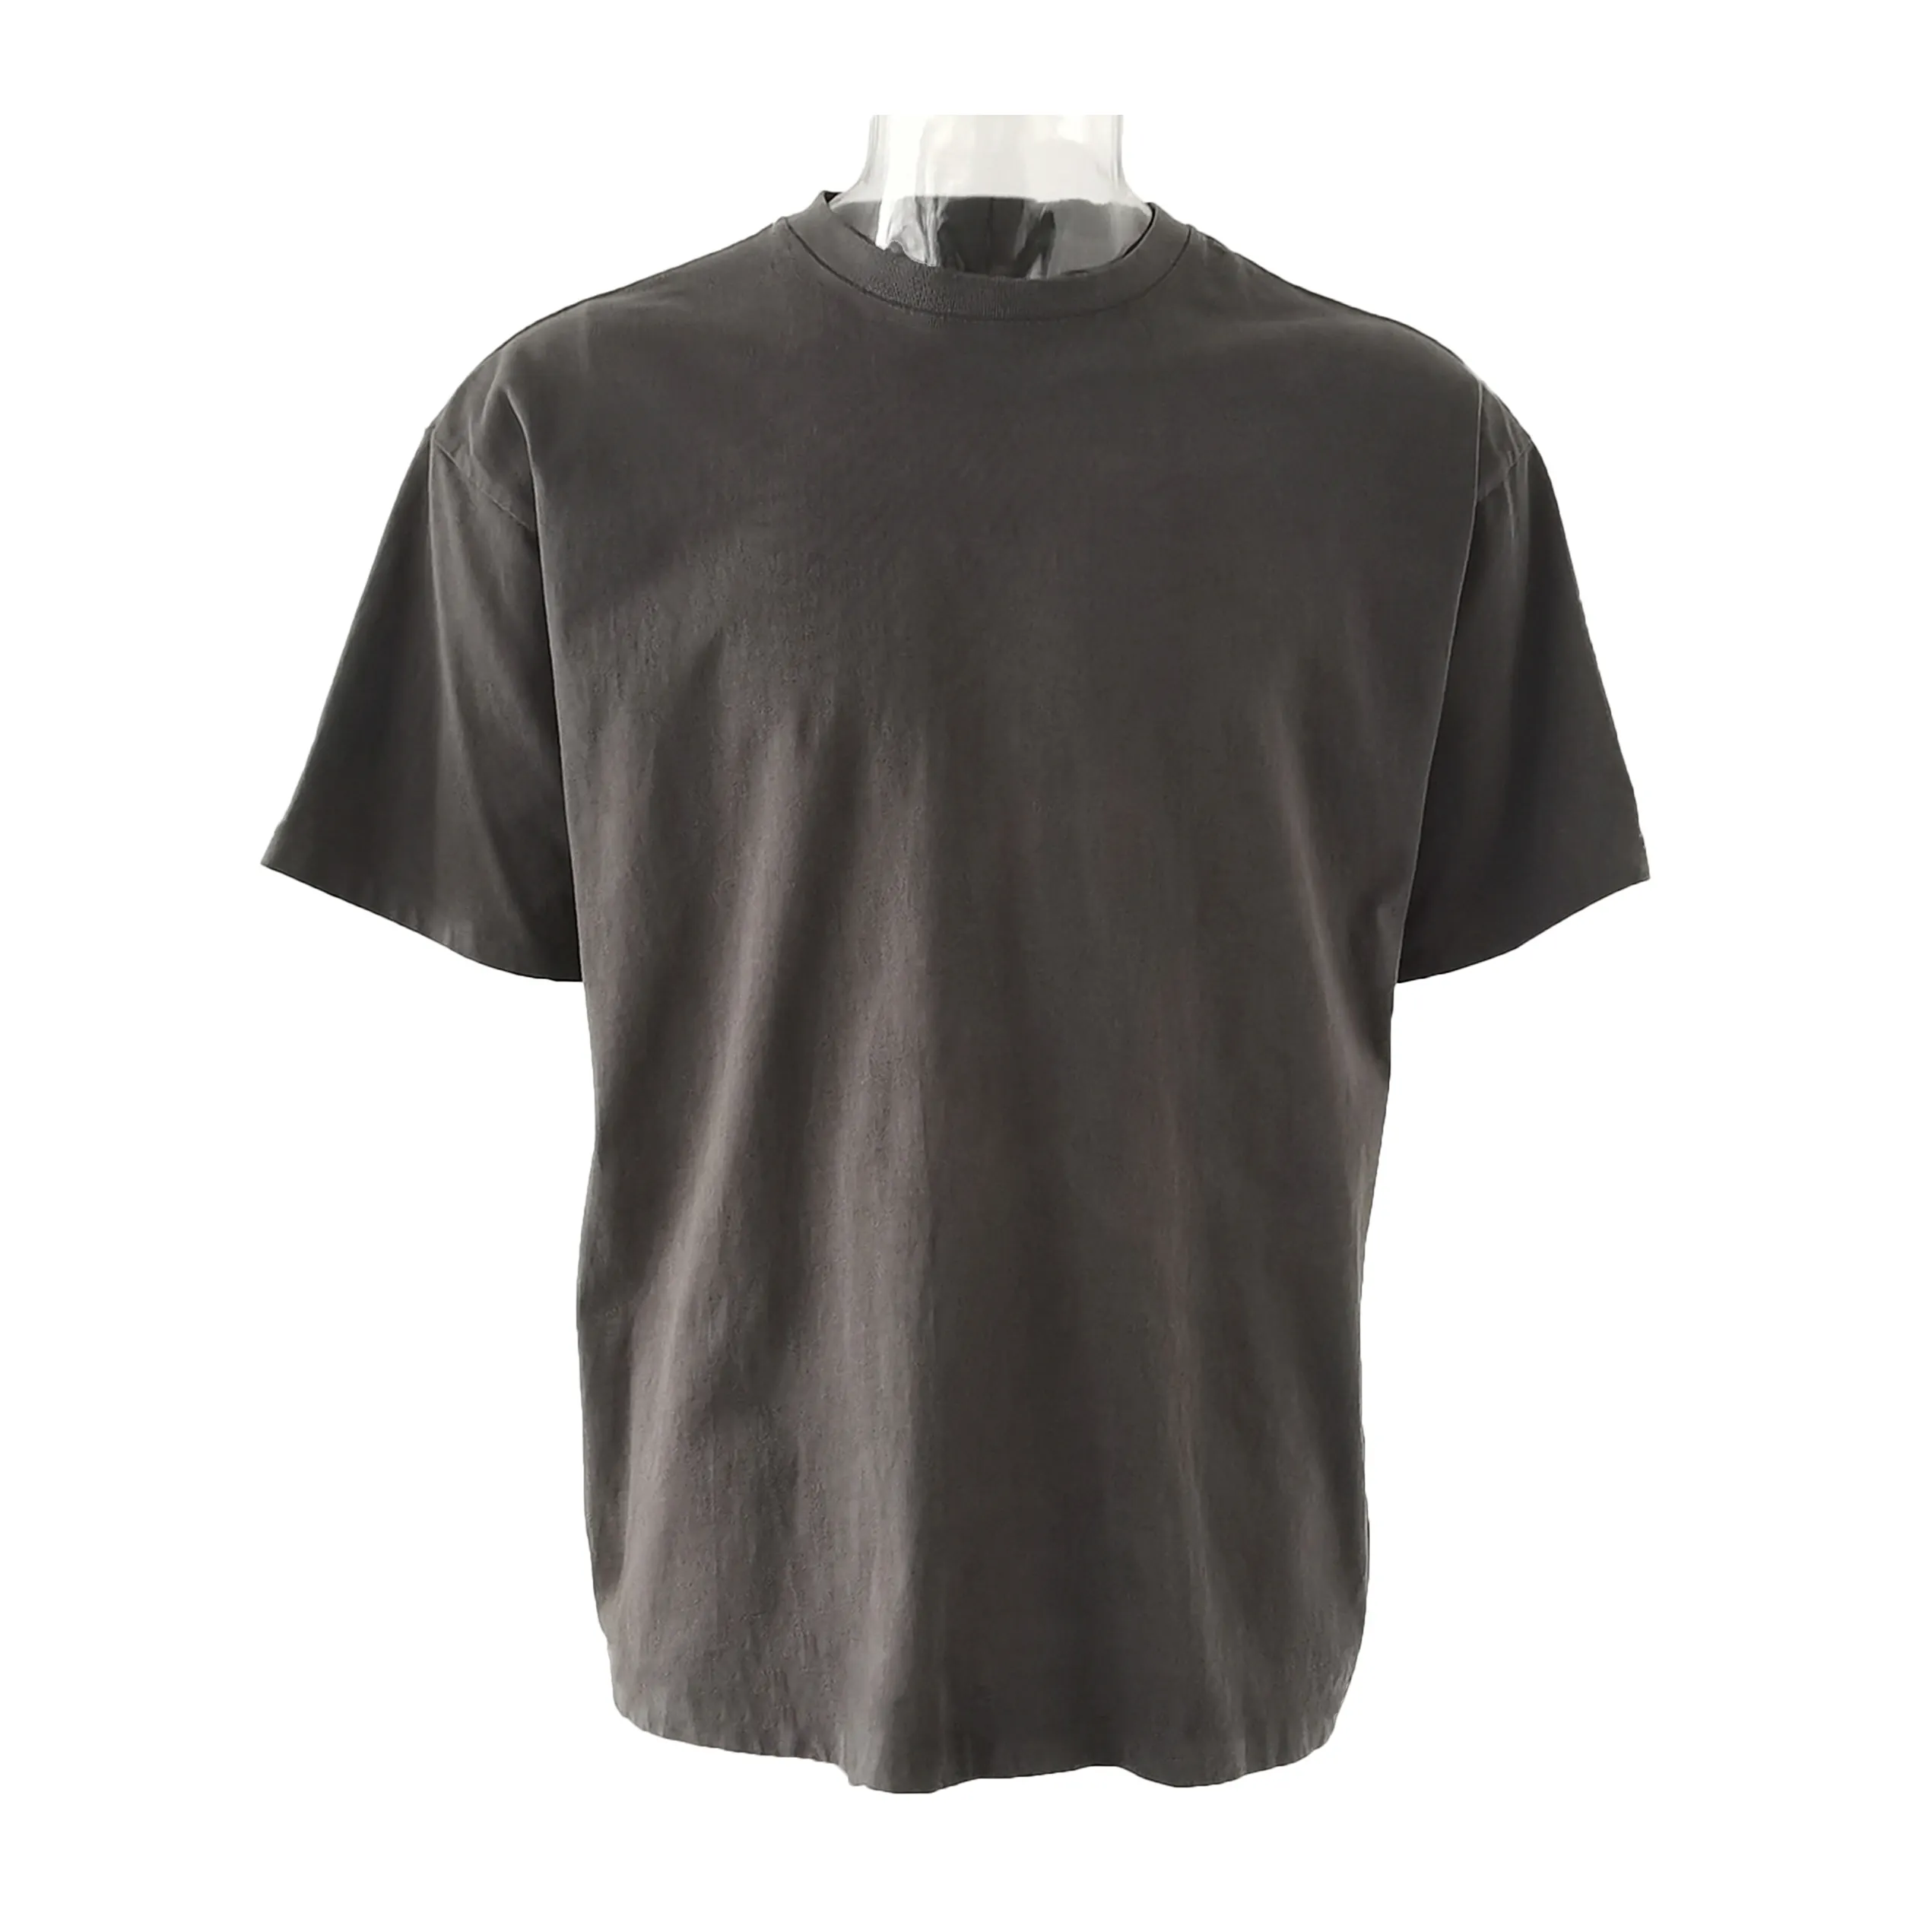 Özel Unisex pamuk boş gevşek Vintage yıkanmış tişört özelleştirilmiş damla omuz boy soluk T shirt erkekler kadınlar için